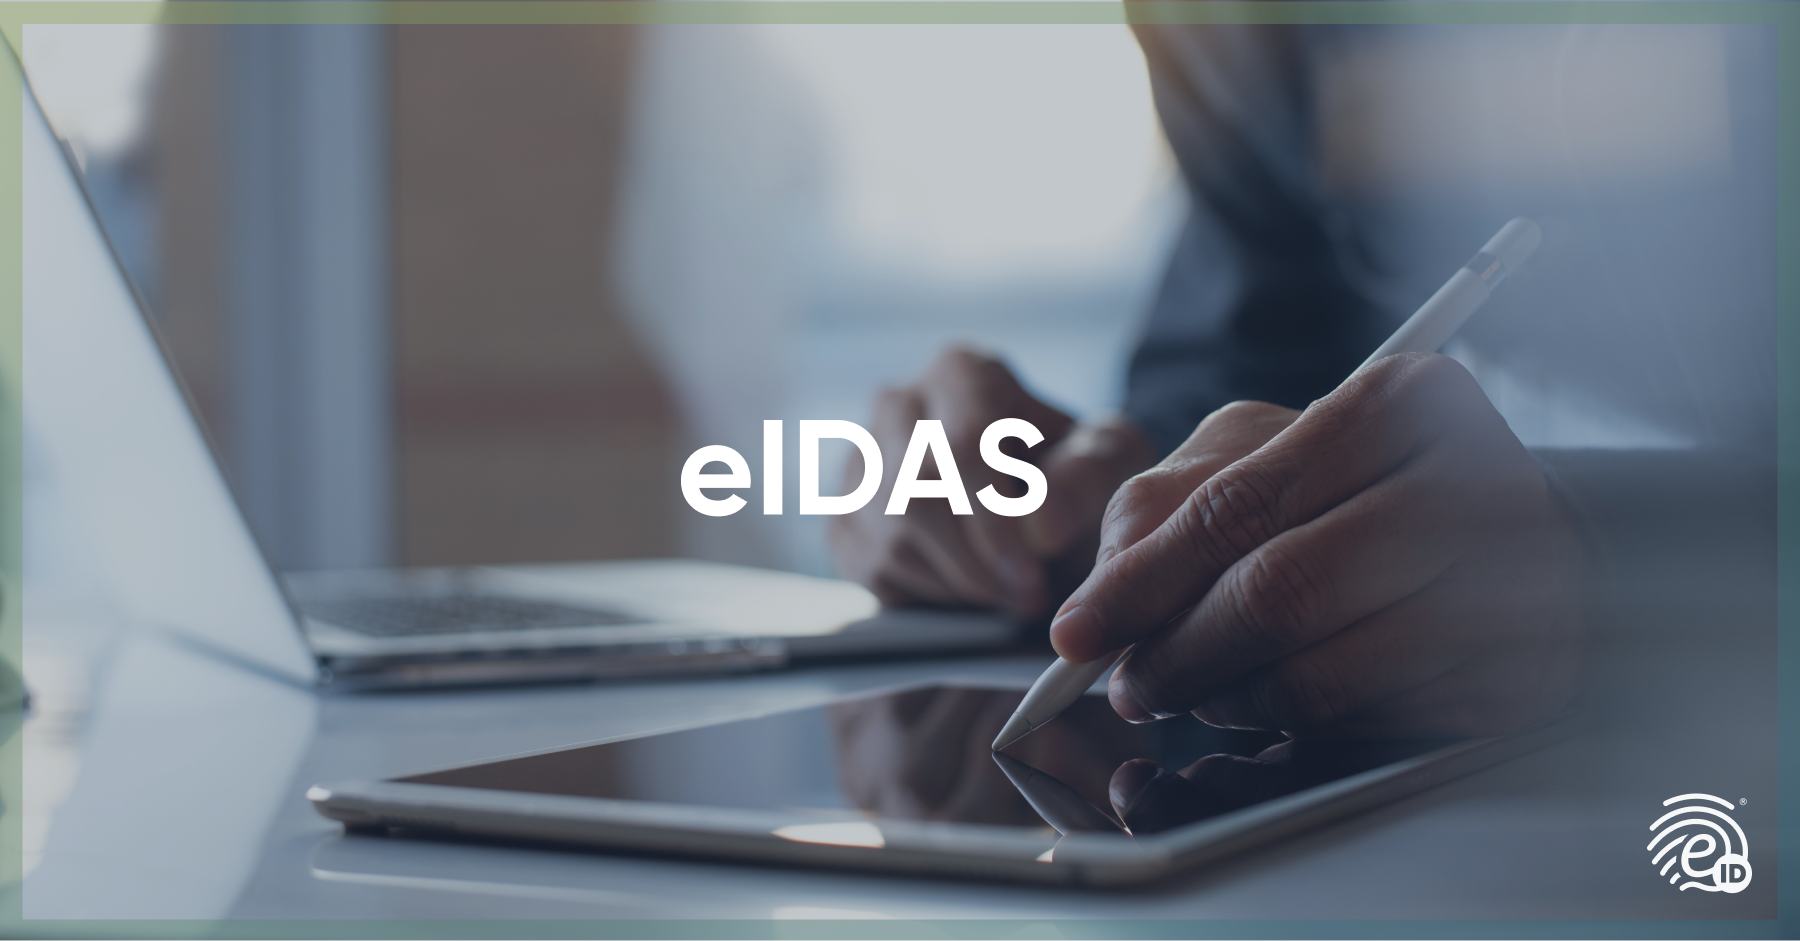 Die eIDAS-Verordnung für digitale Signaturen in Deutschland